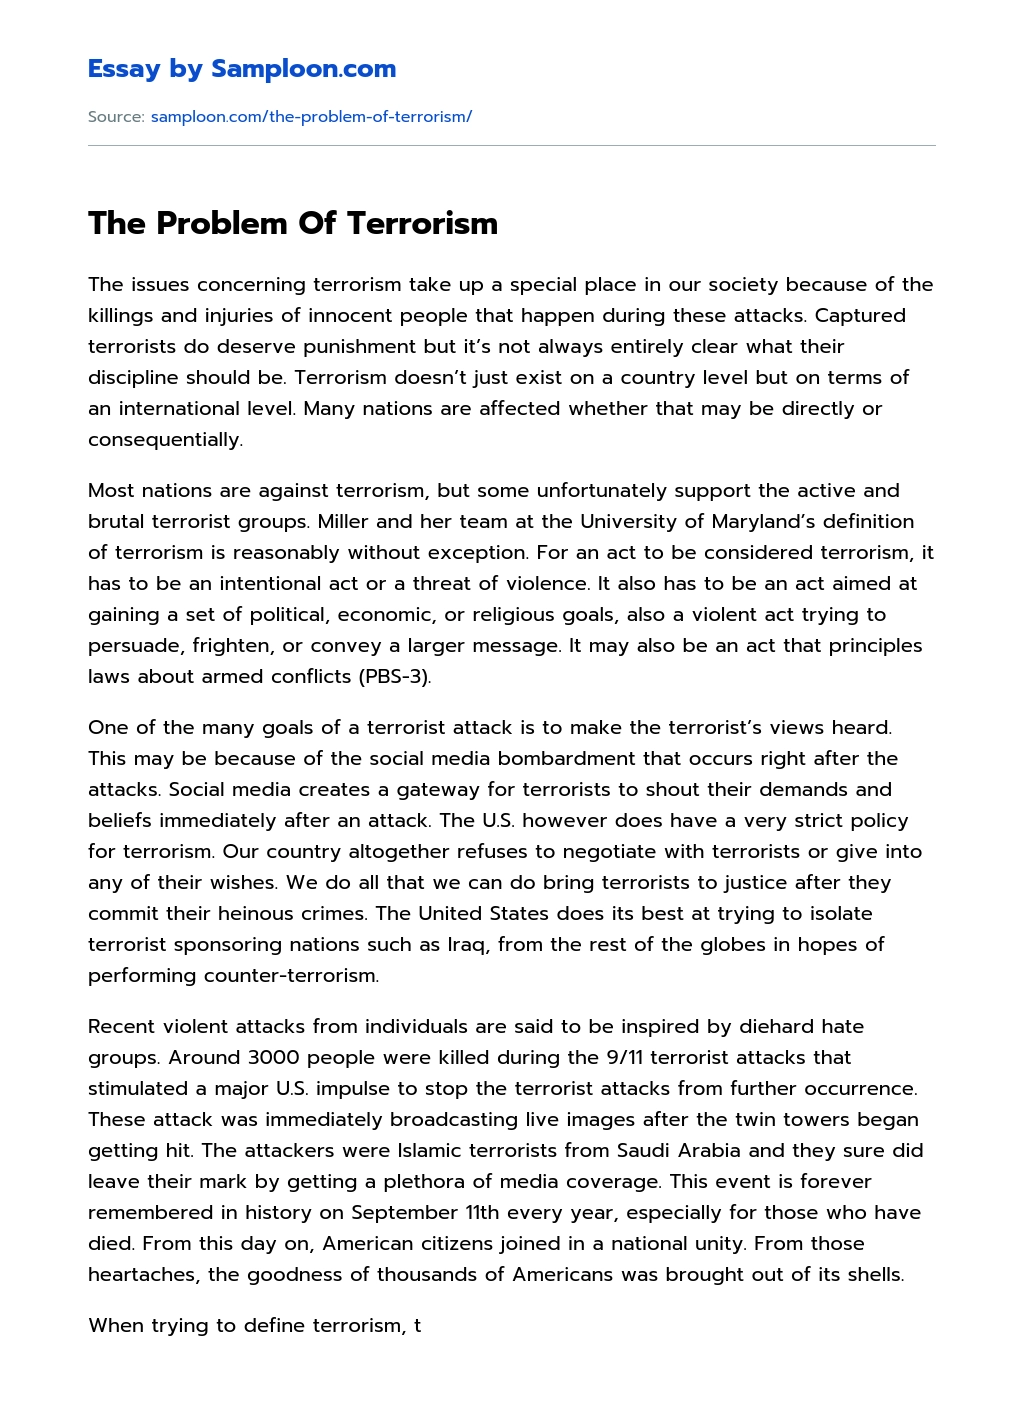 terrorism essay questions